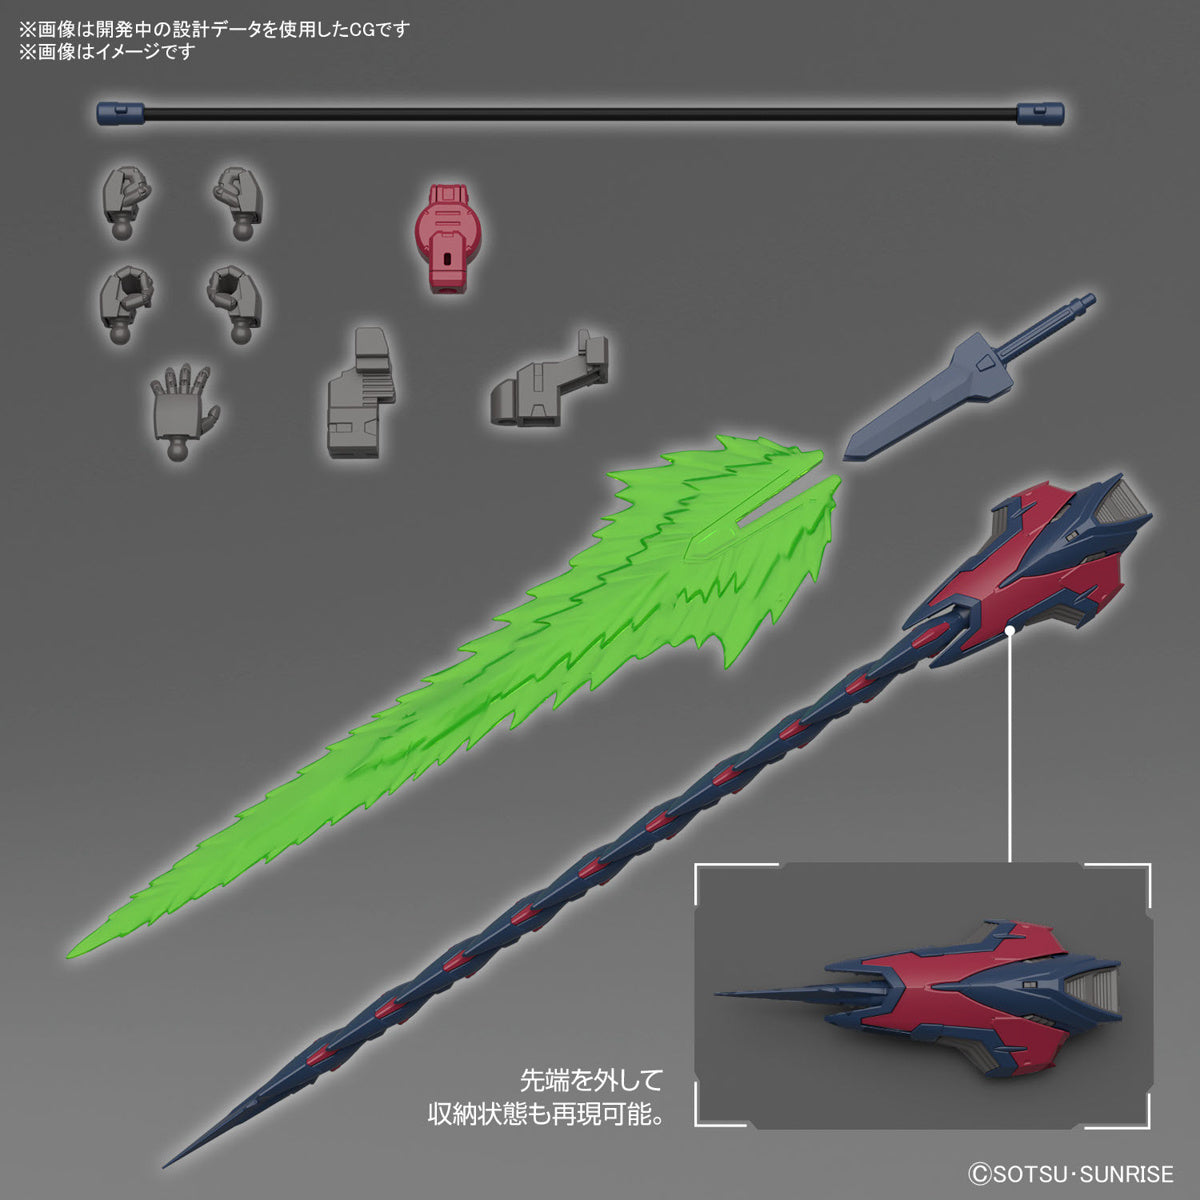 1/144 RG Gundam Epyon